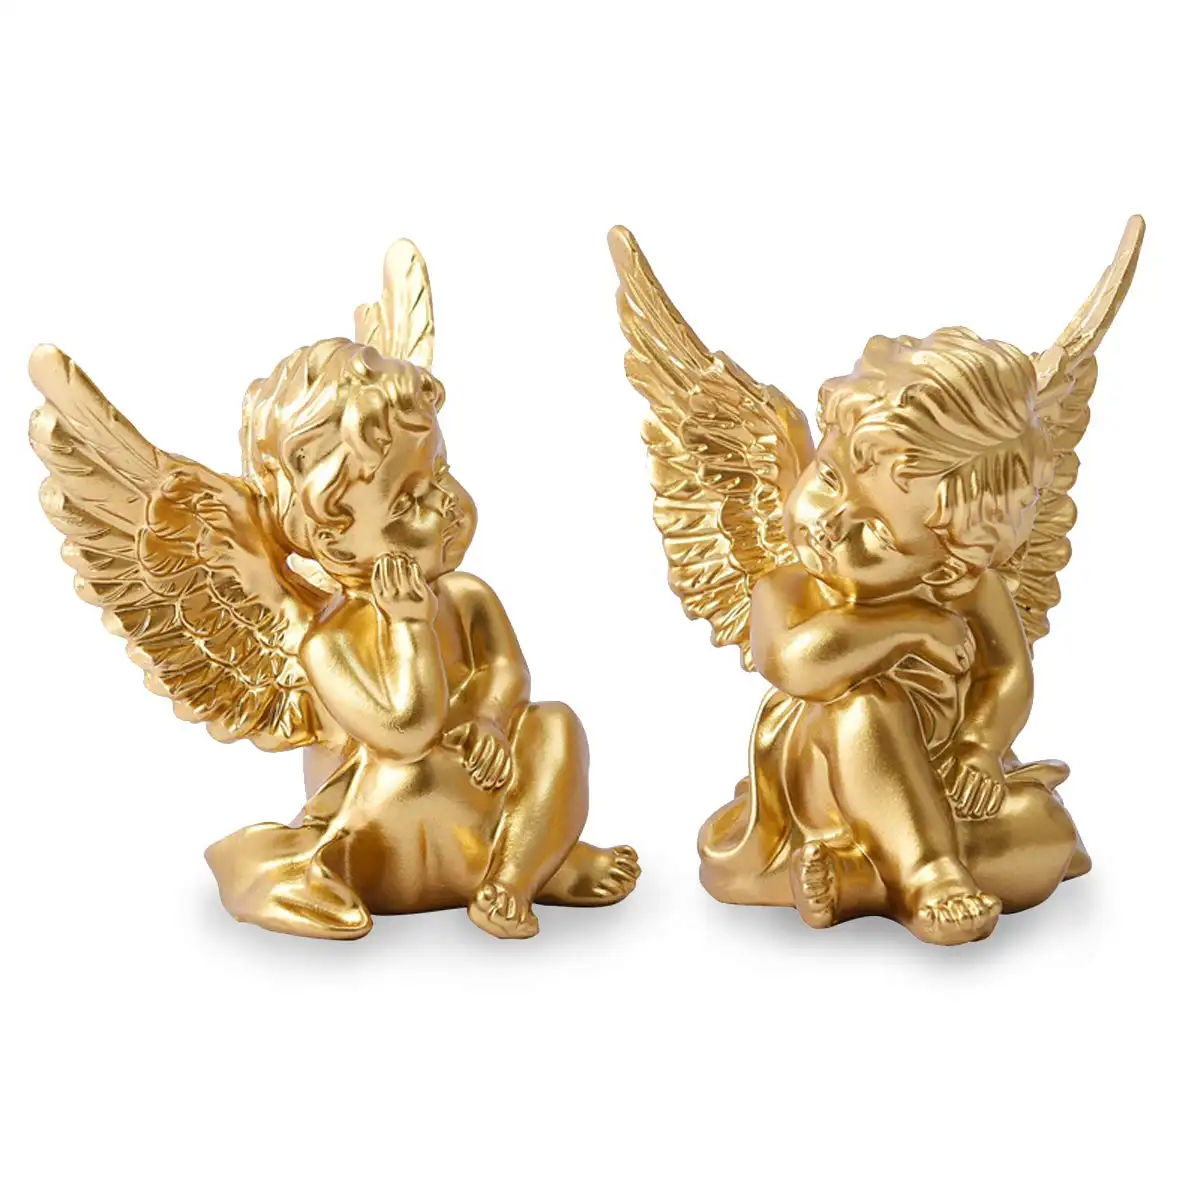 Patung Memorial patung malaikat menggemaskan satu Set 2 Cherubs malaikat ornamen patung Resin